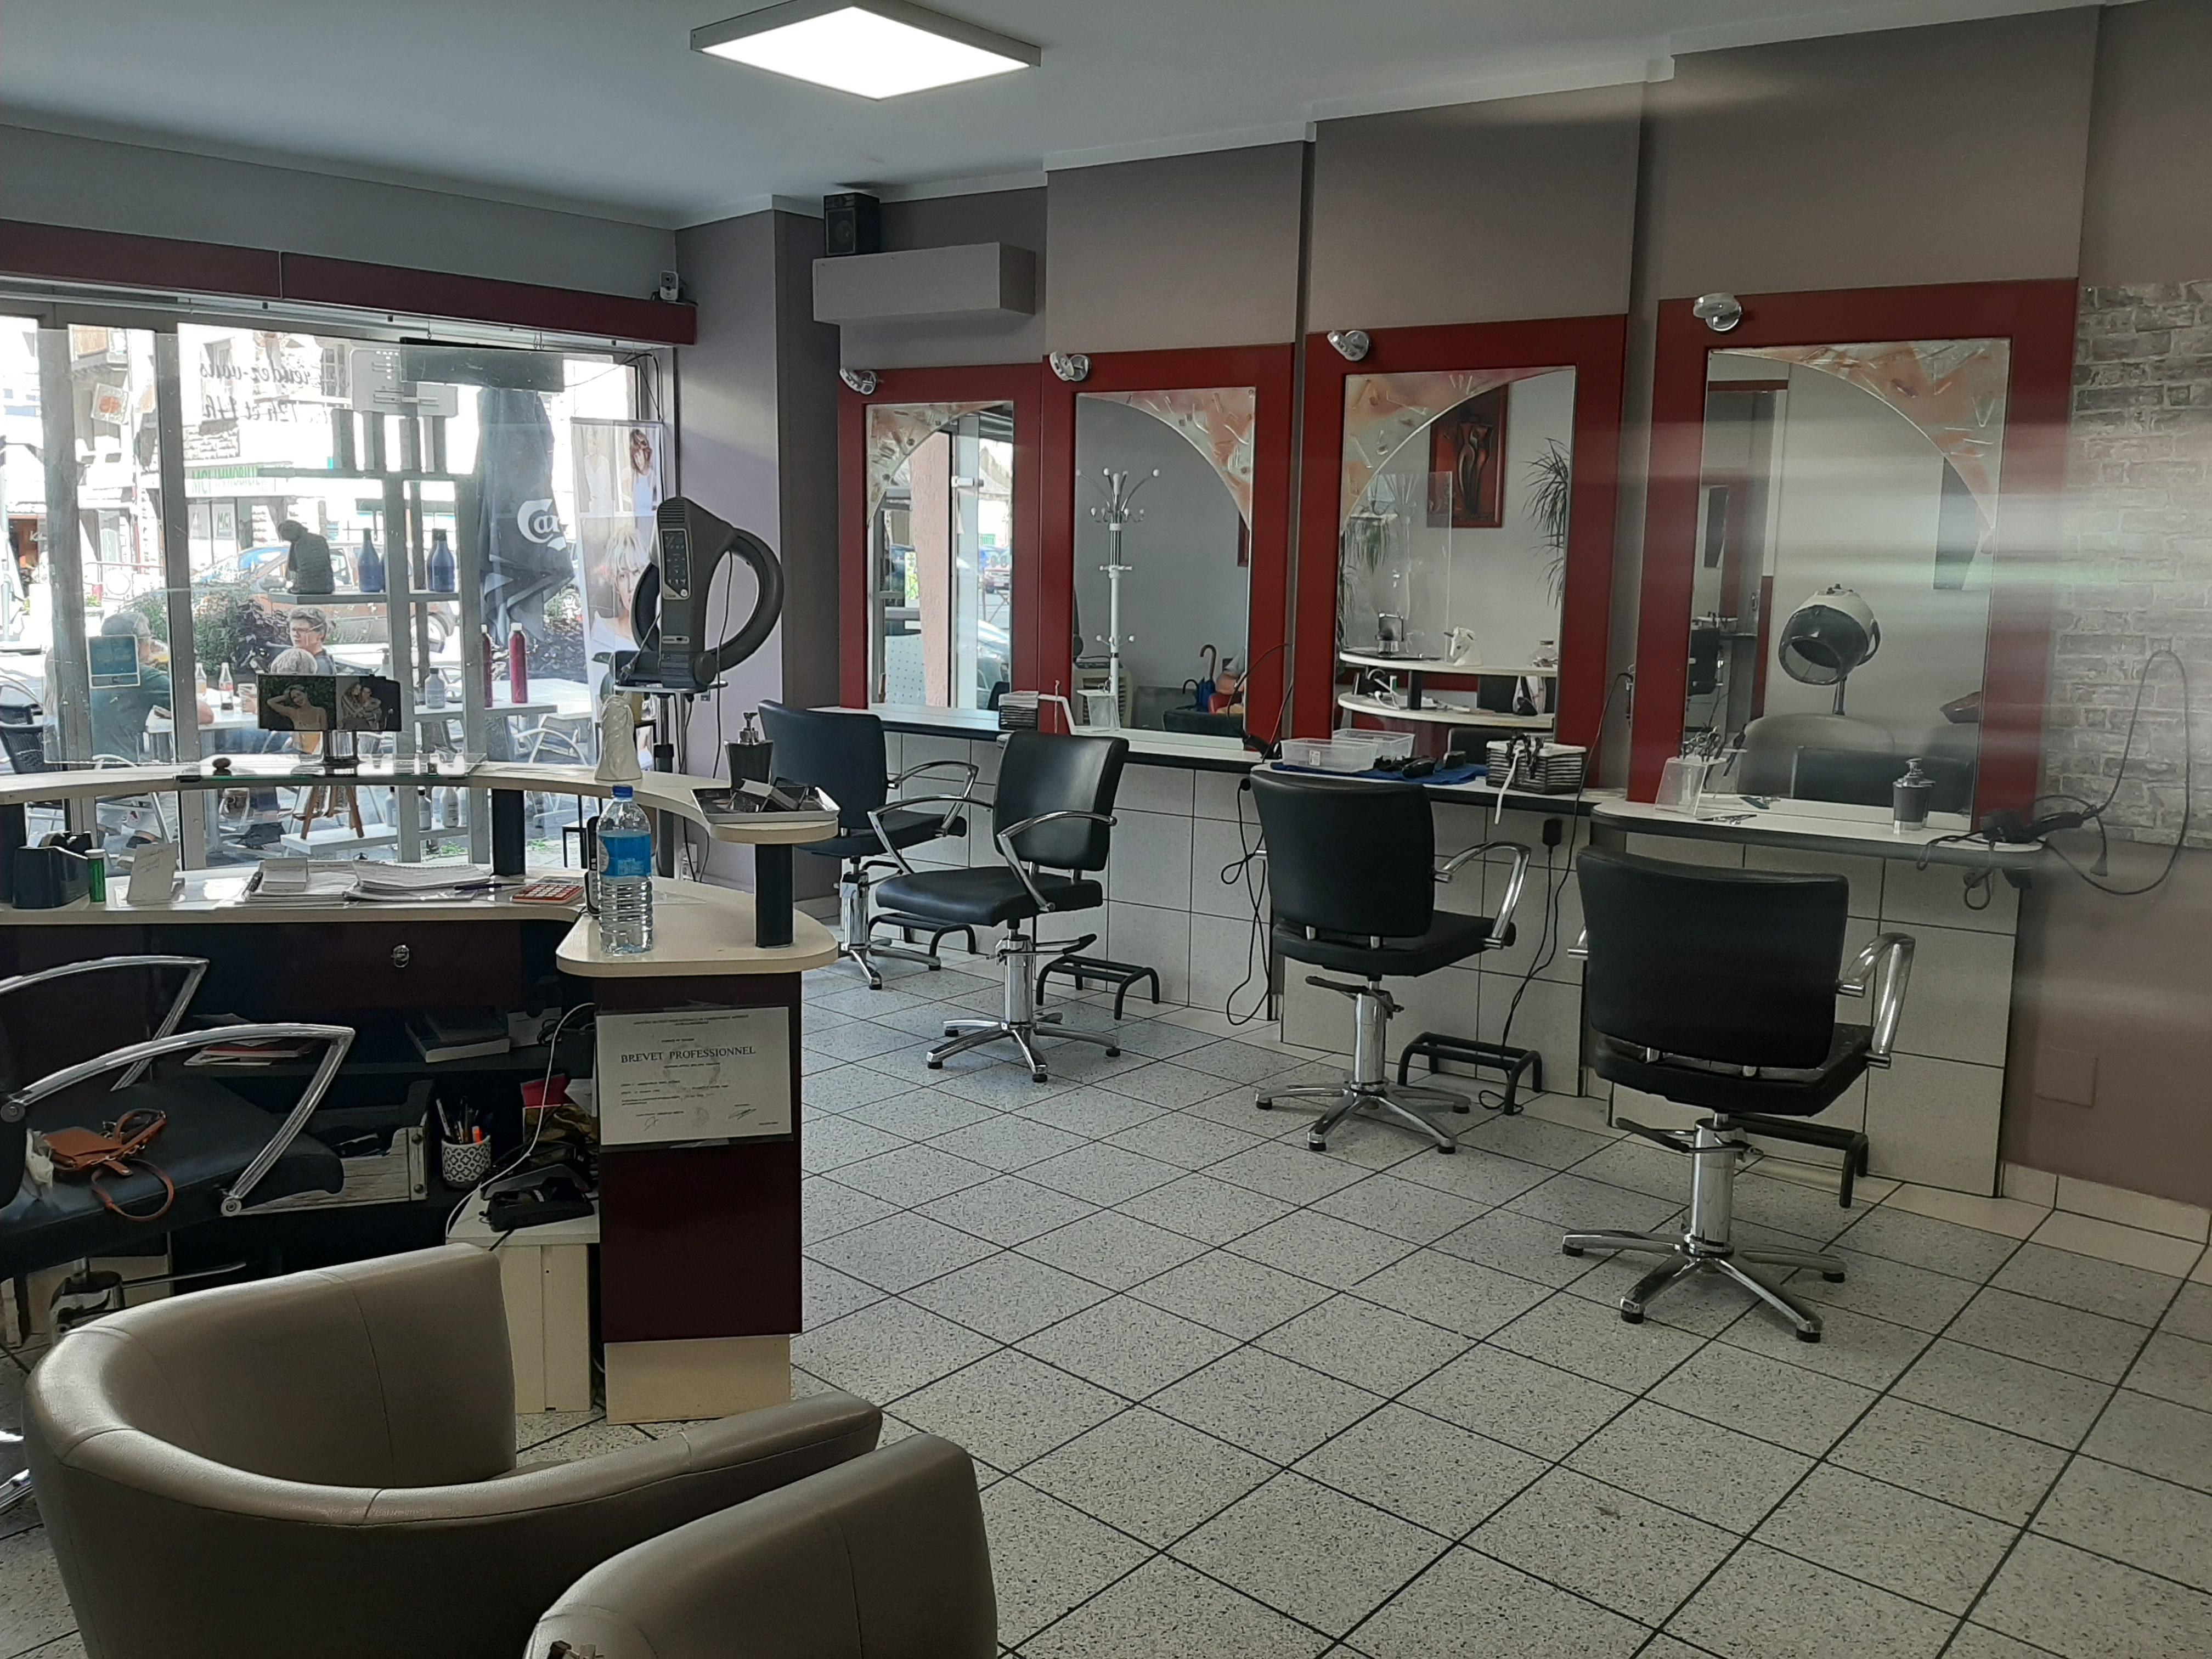 Vend cause santé, fond de commerce d'un salon de coiffure situé dans une charmante ville de l'Aveyron d'environ 5 000 habitants. Idéal pour une première installation
22 000€ à débattre